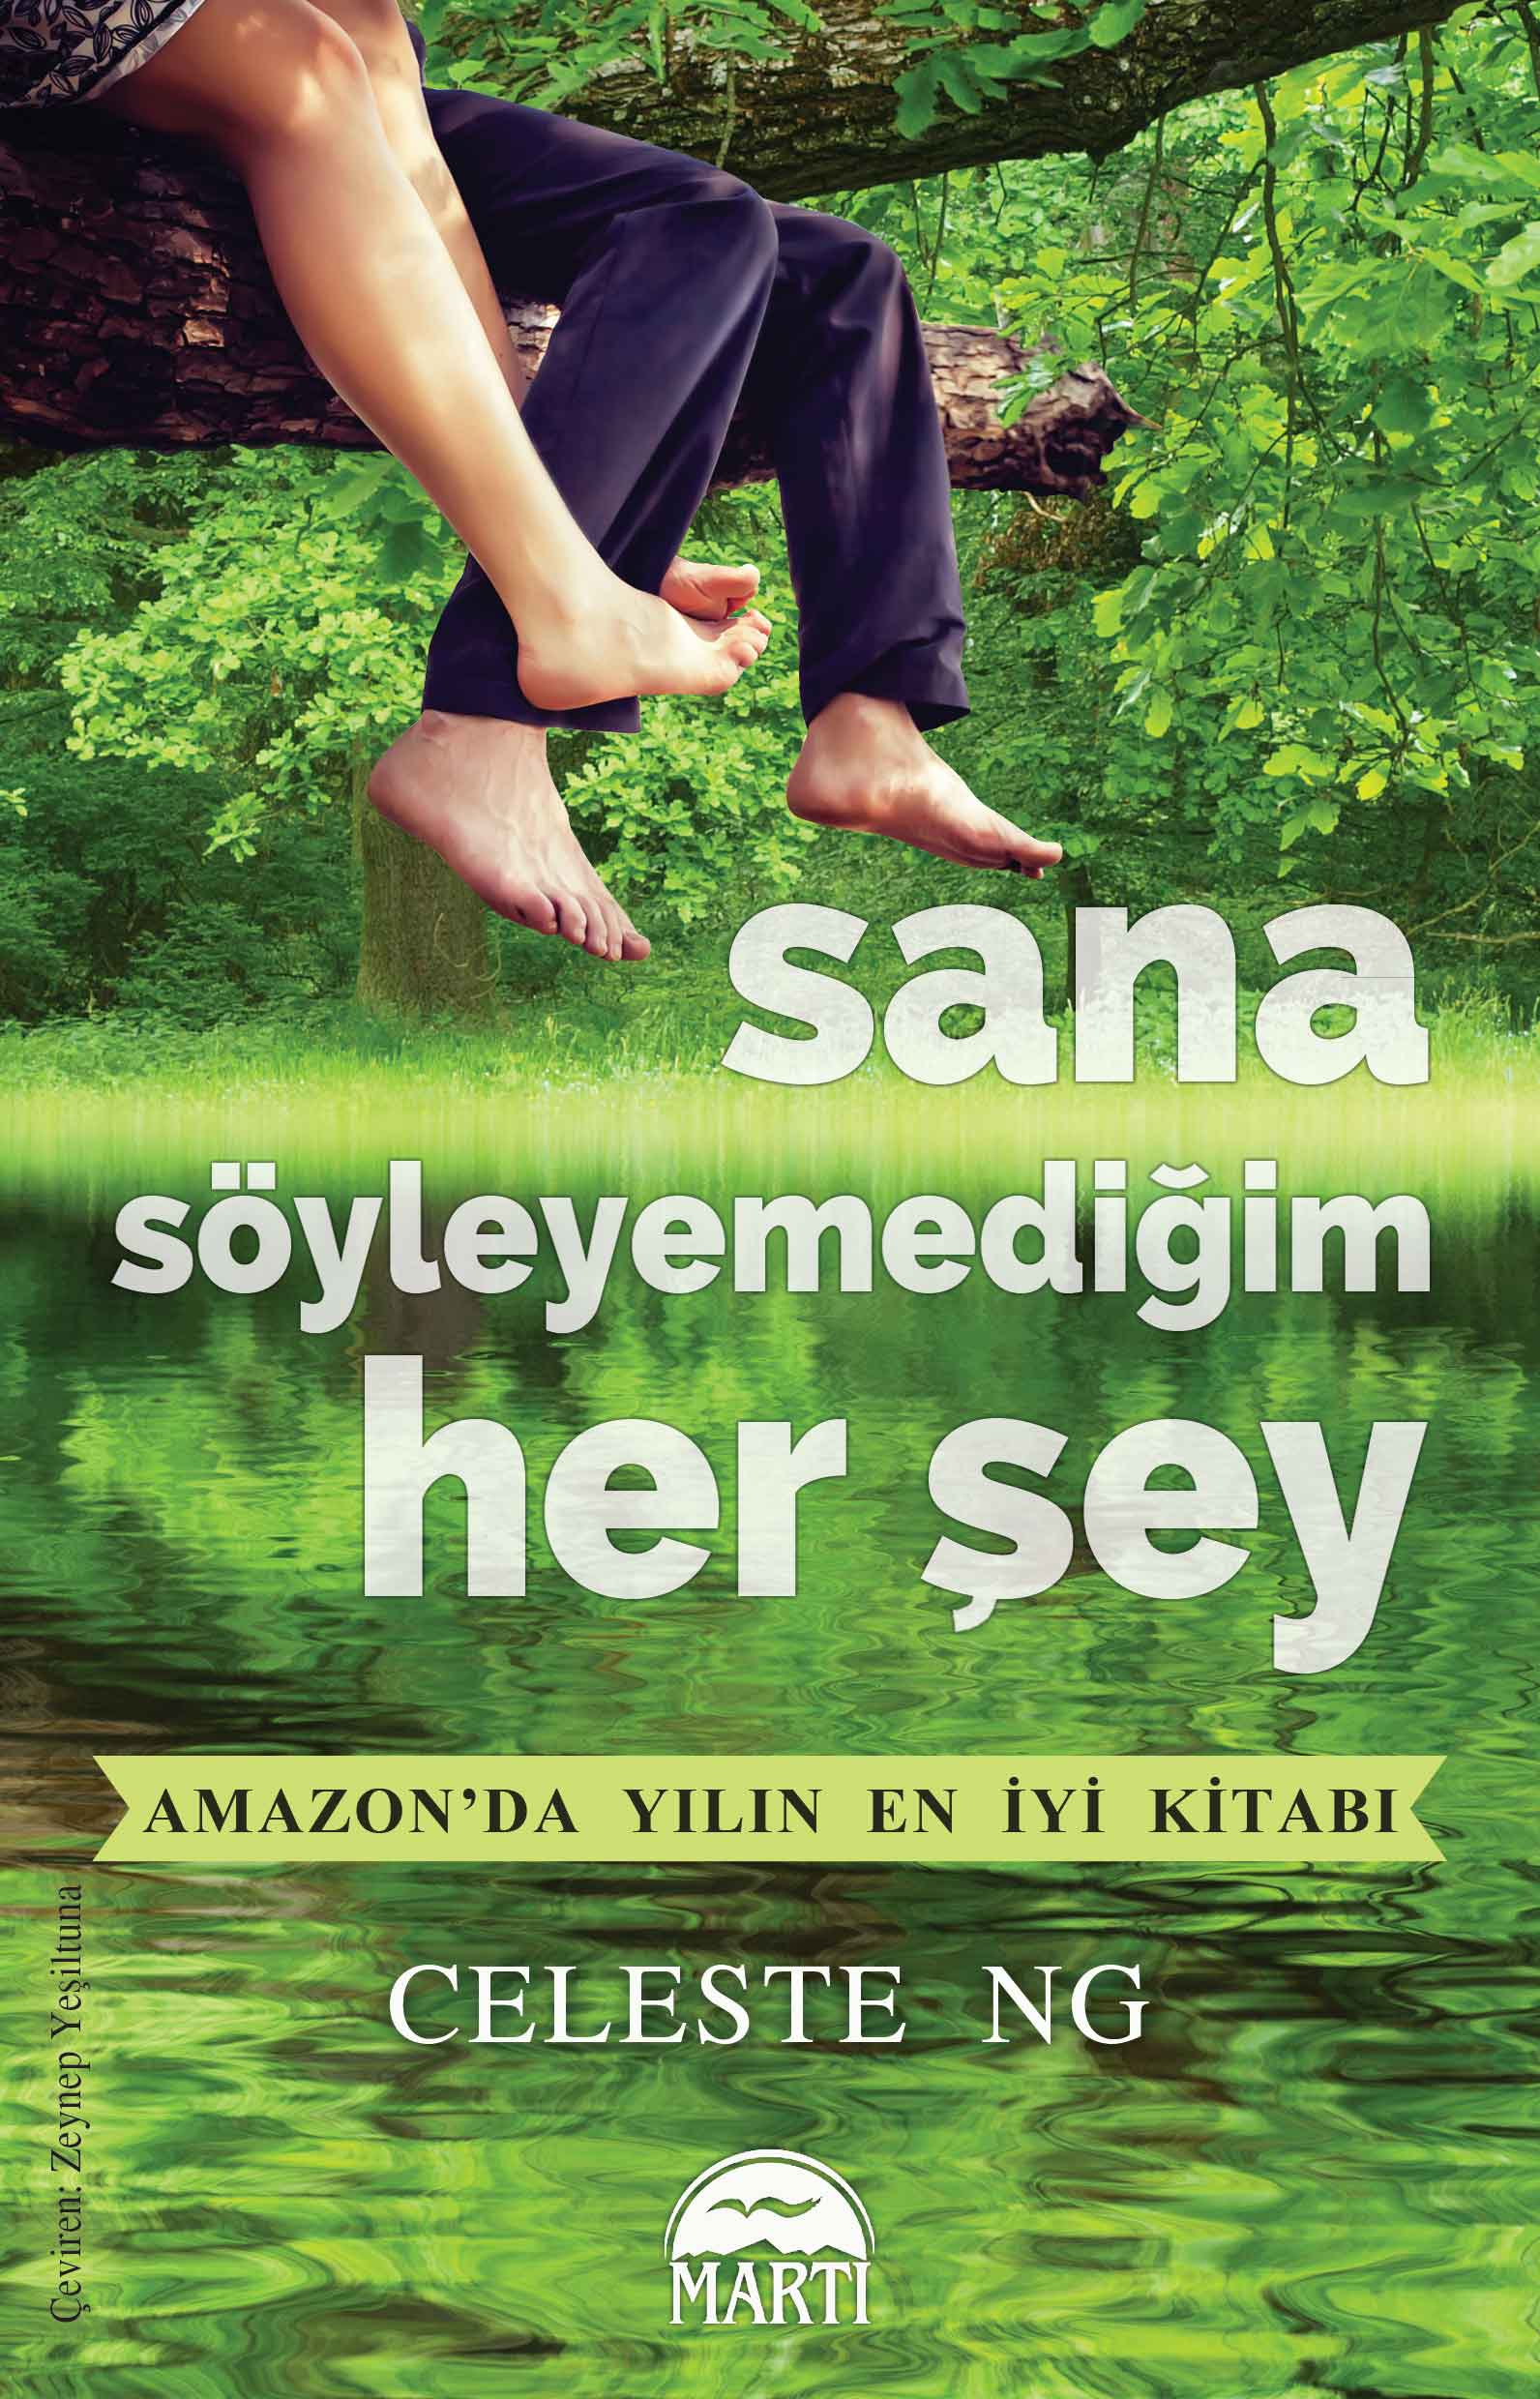 Sana söyleyemediğim her şey (Turkish)